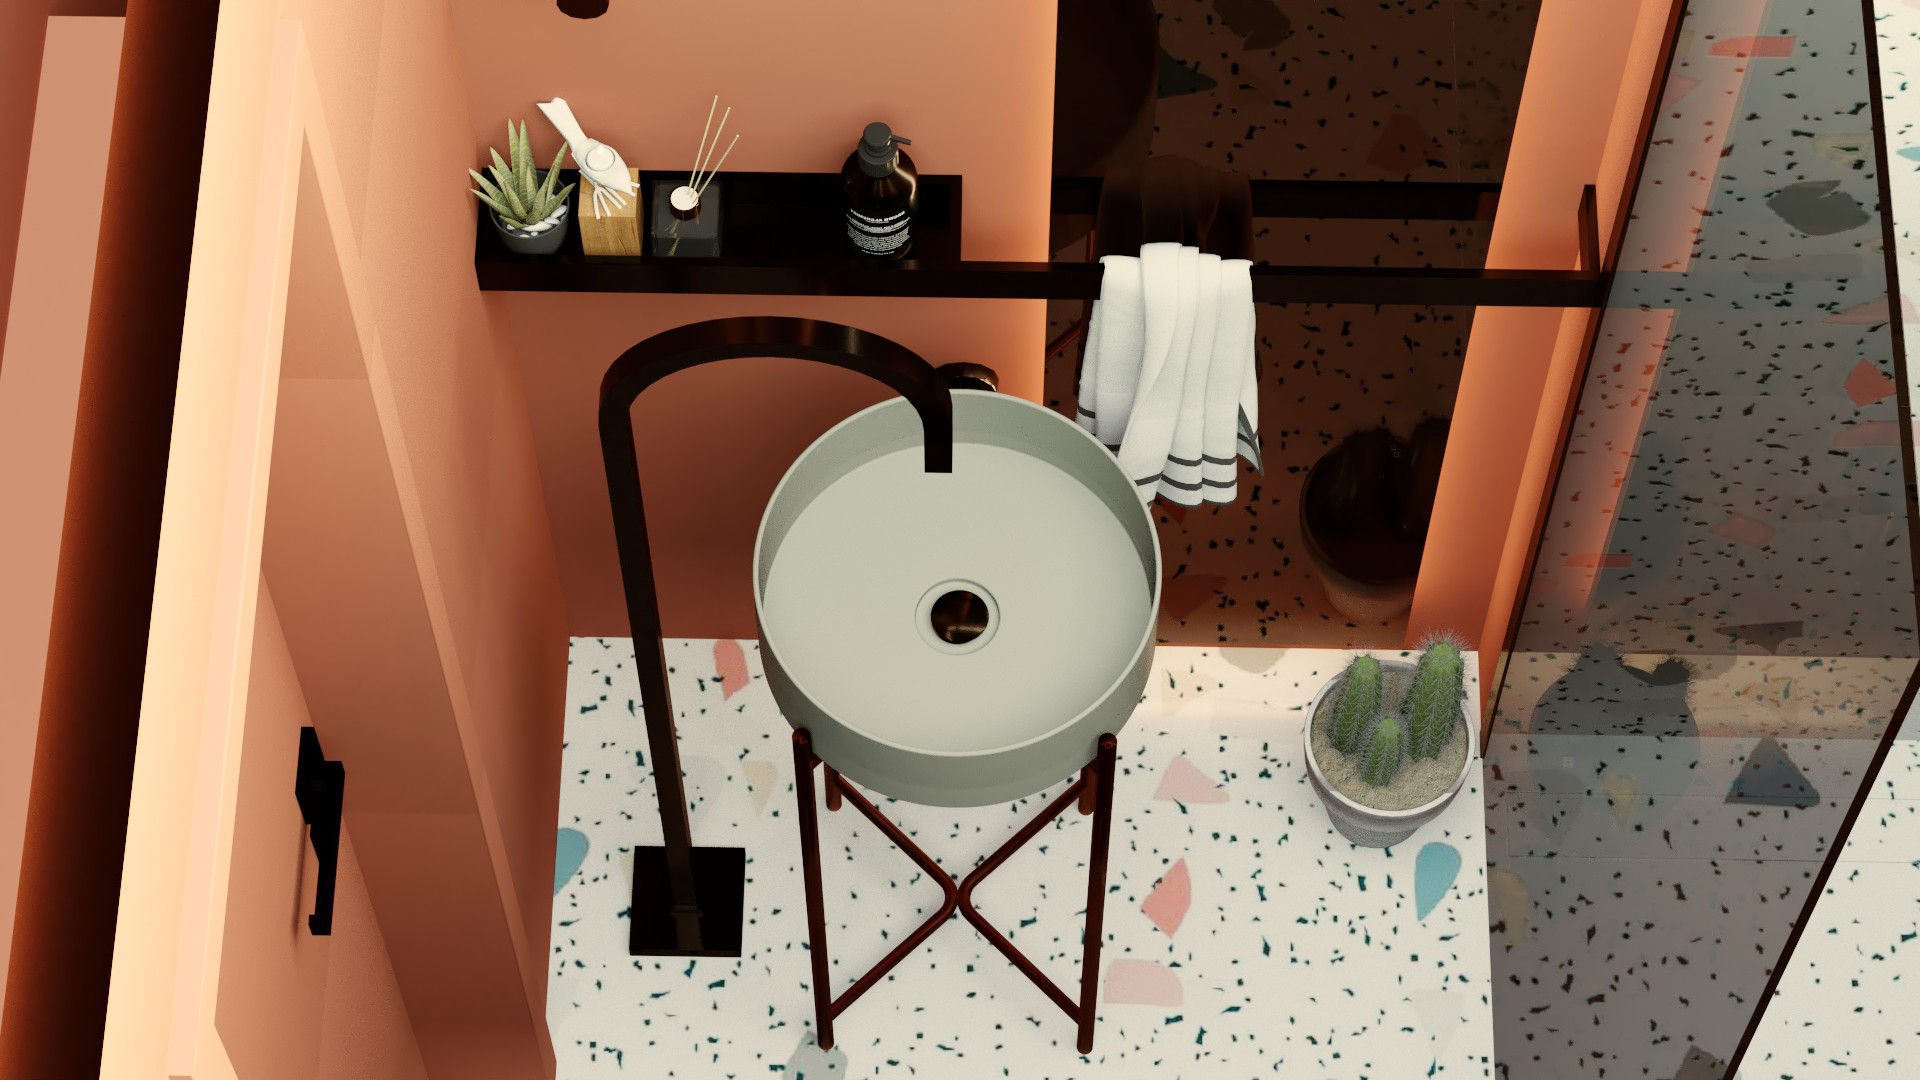 Casa de banho minimalista, Letícia Gurgel design de interiores Letícia Gurgel design de interiores Minimalist bathroom